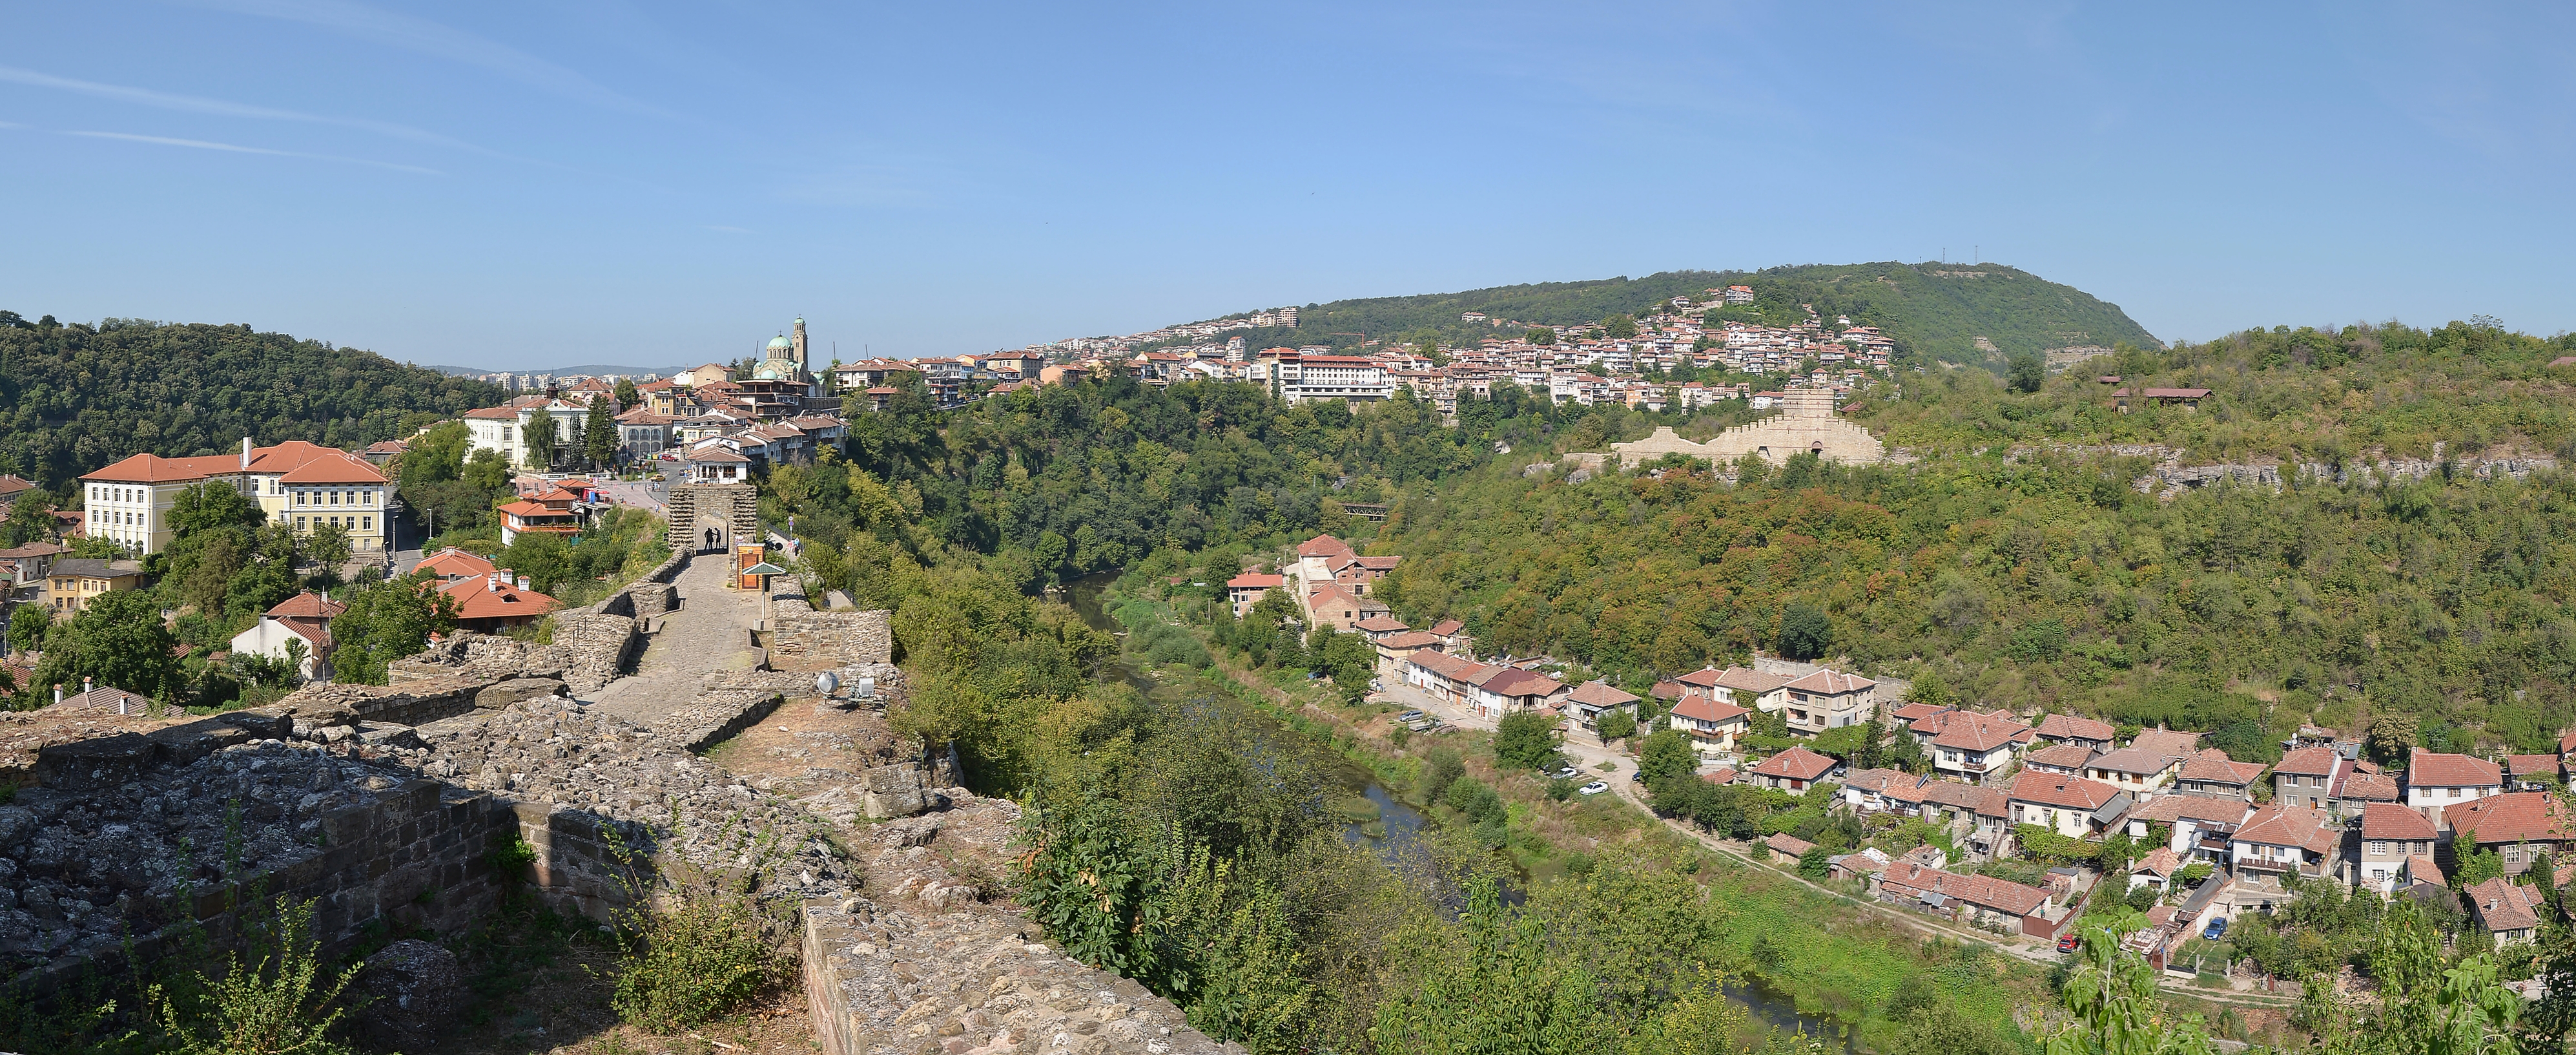 Veliko Tarnovo (Велико Търново) - view from Tsarevets